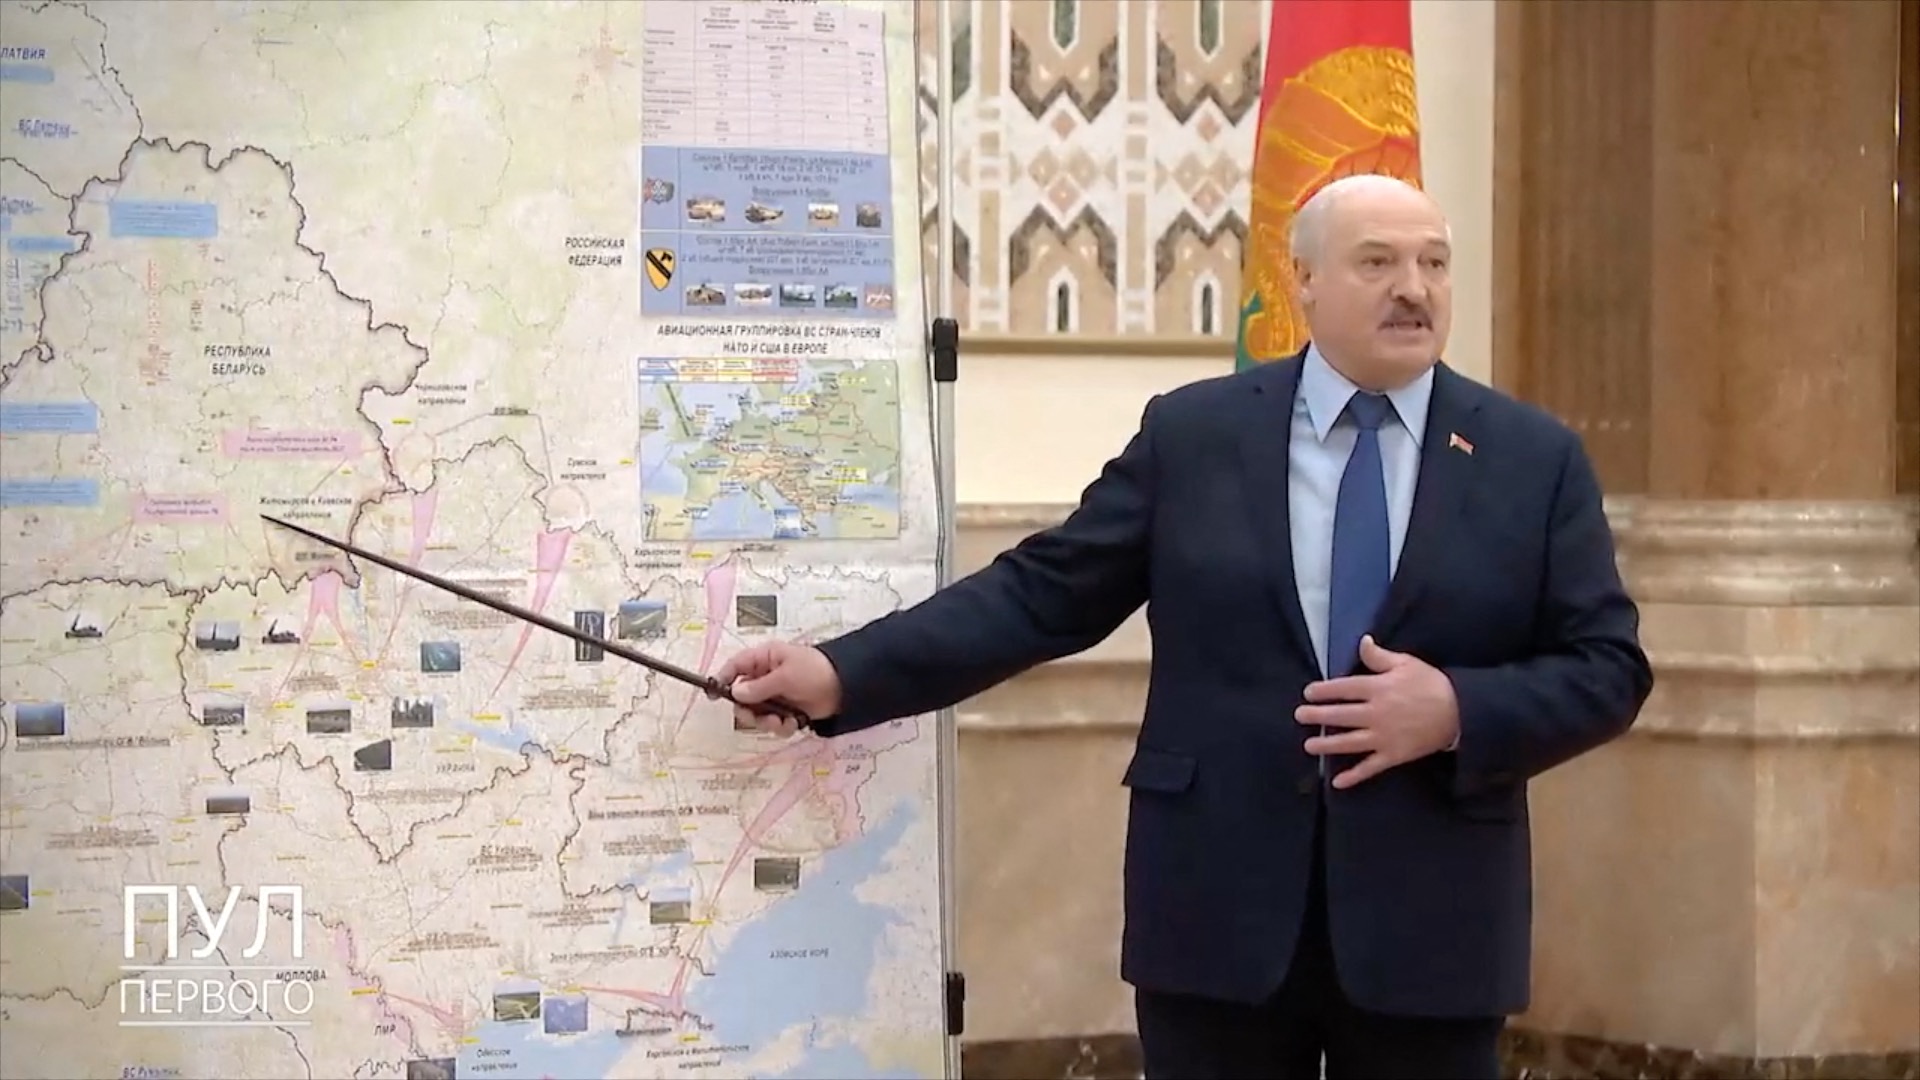 Lukasenka utasításba adta, hogy Fehéroroszország biztosítson áramot a csernobili atomerőműnek